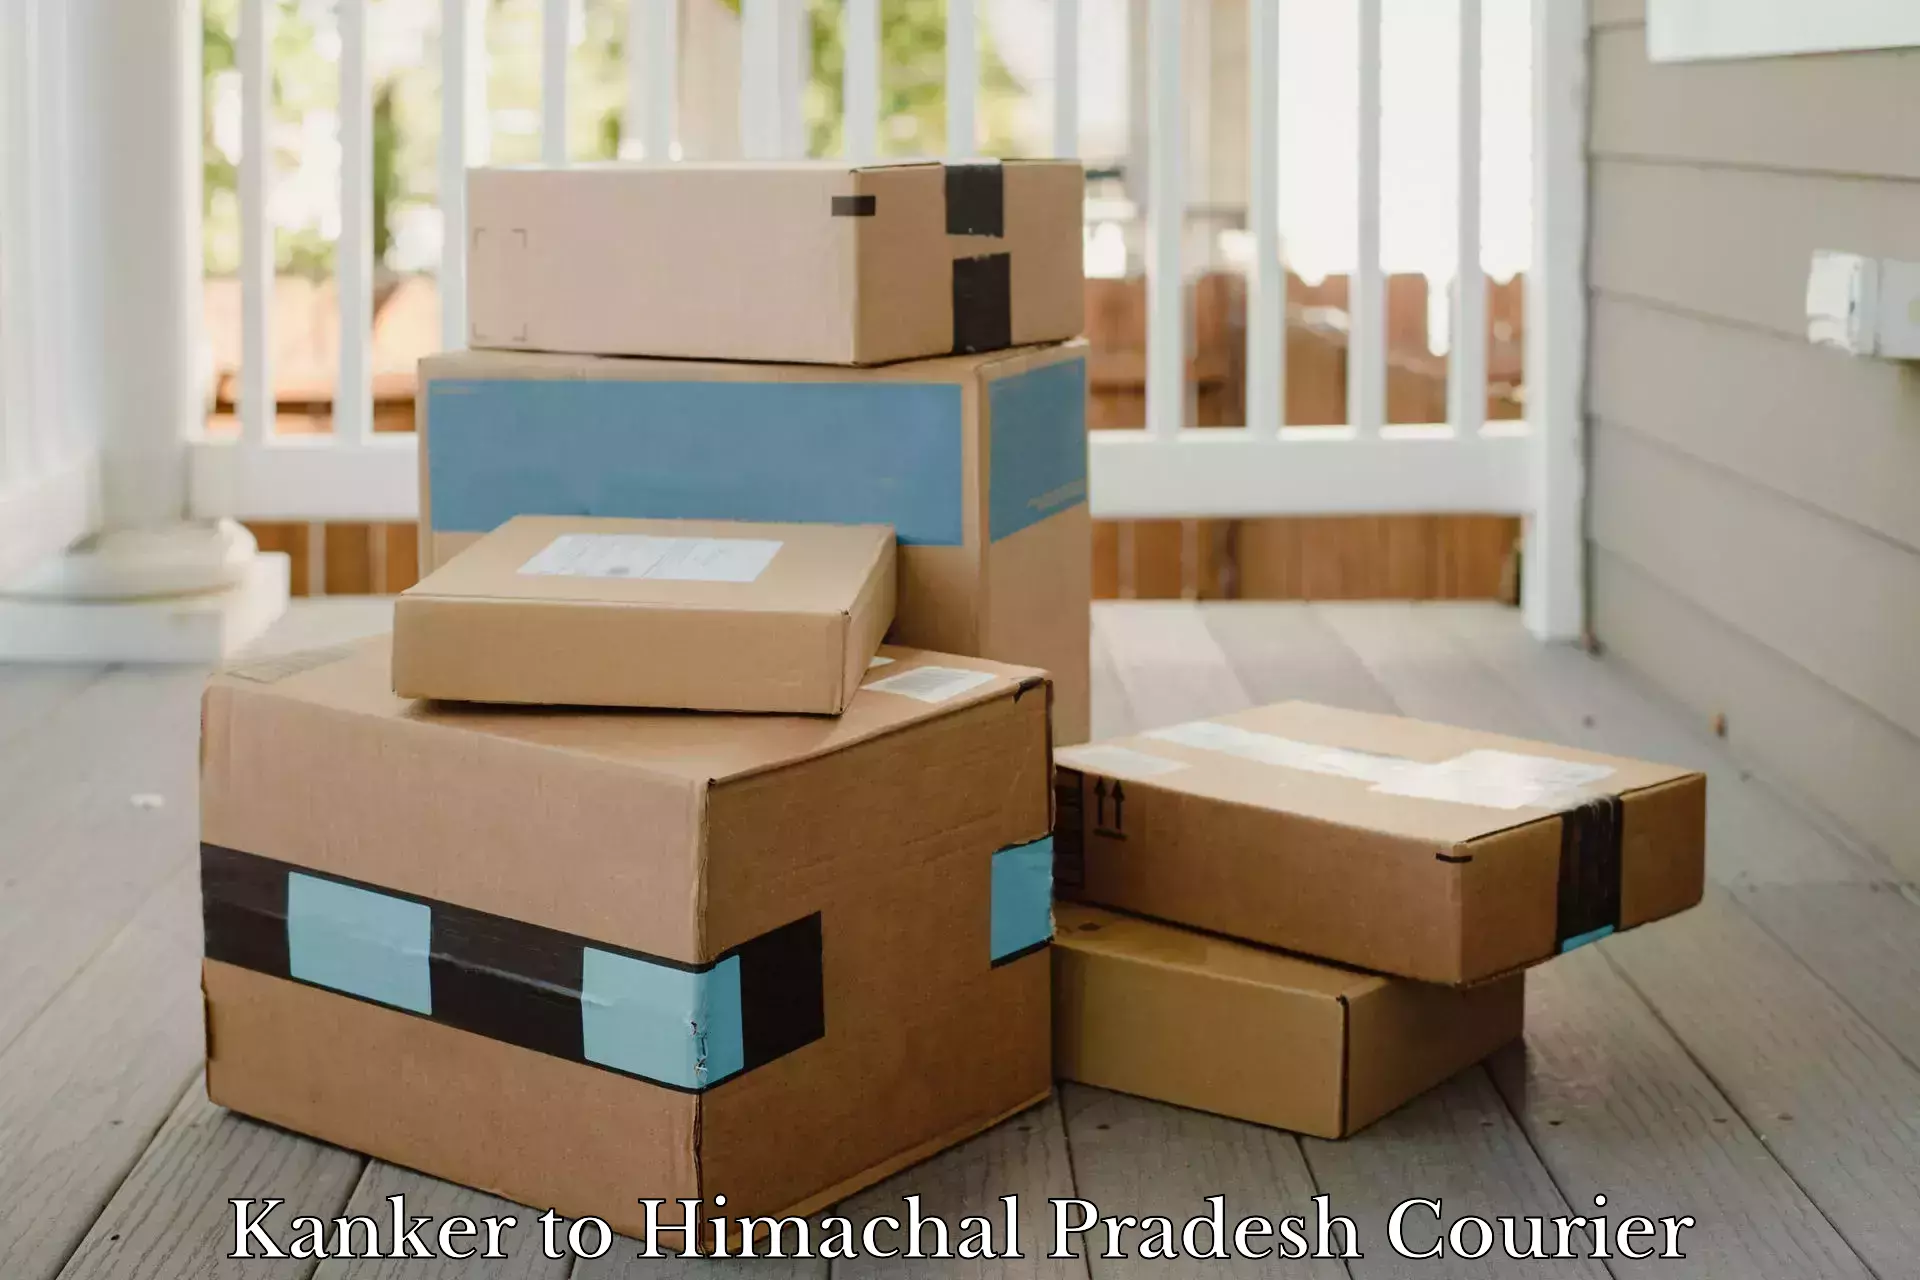 Efficient parcel delivery in Kanker to Himachal Pradesh